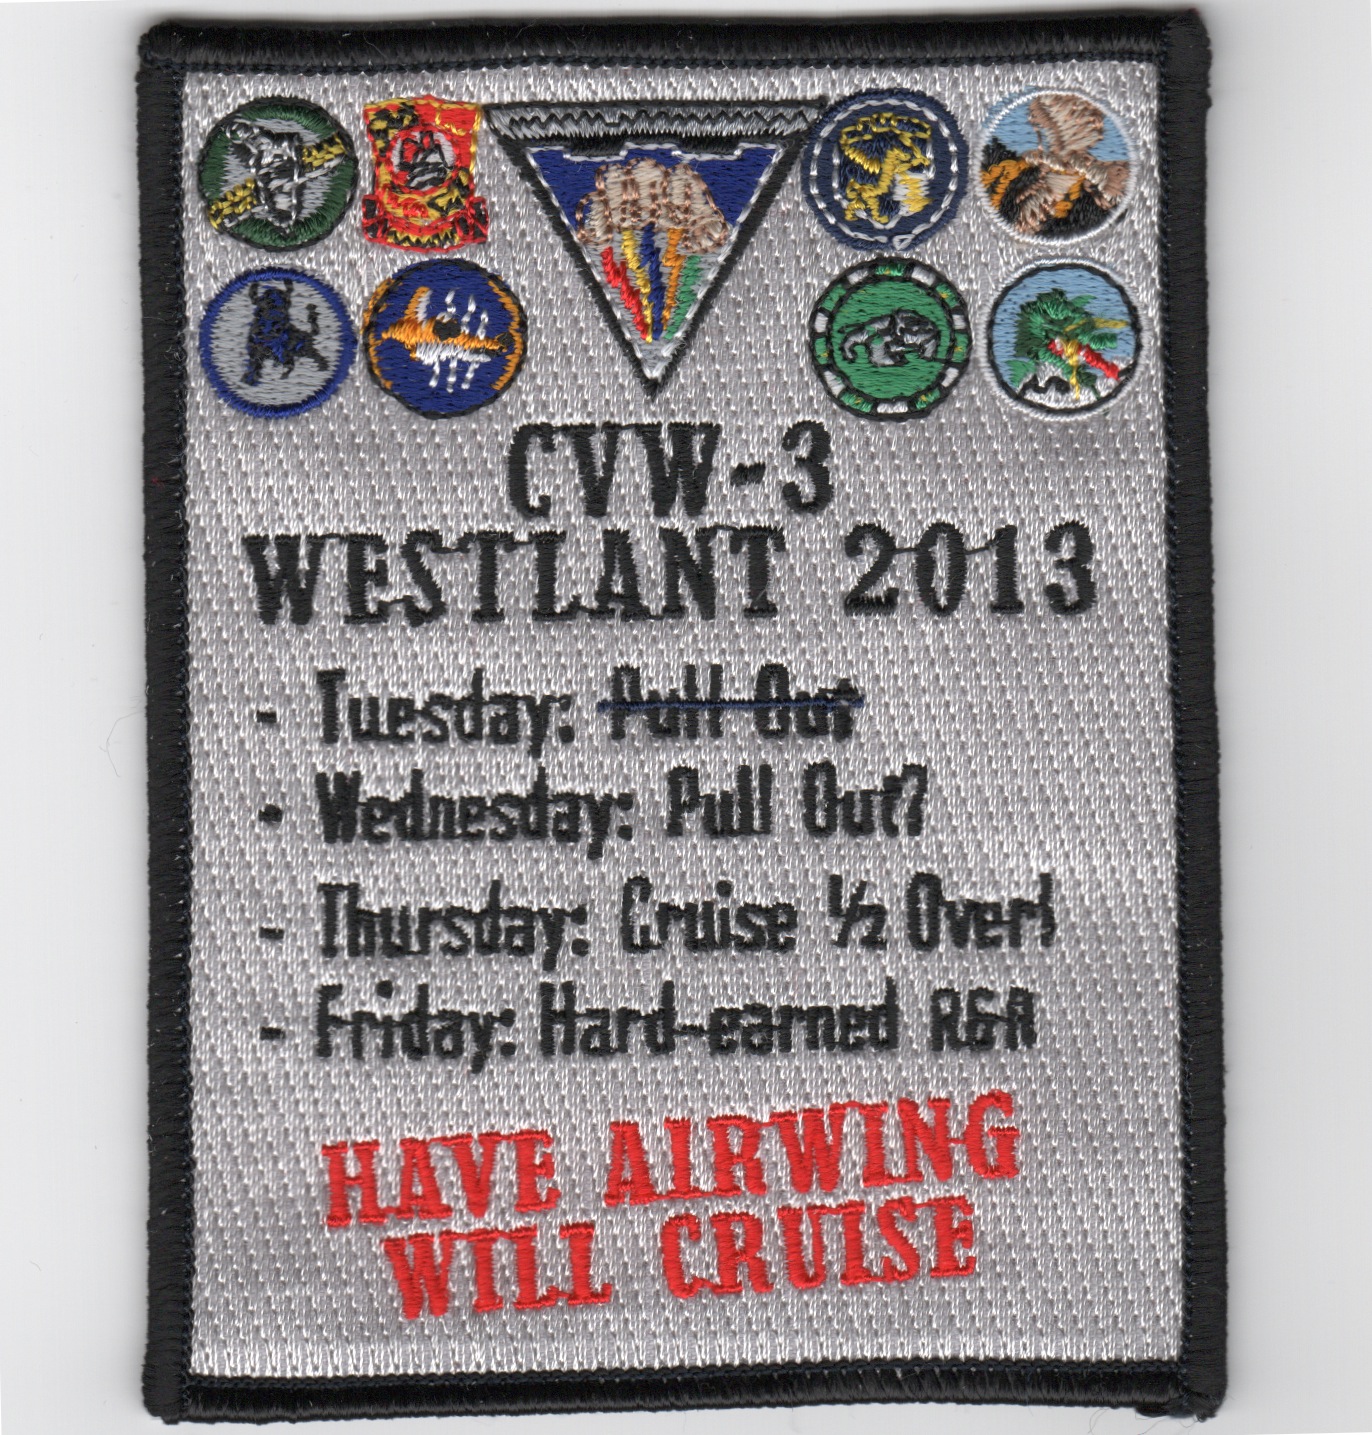 CVW-3 2013 WESTLANT Cruise Patch